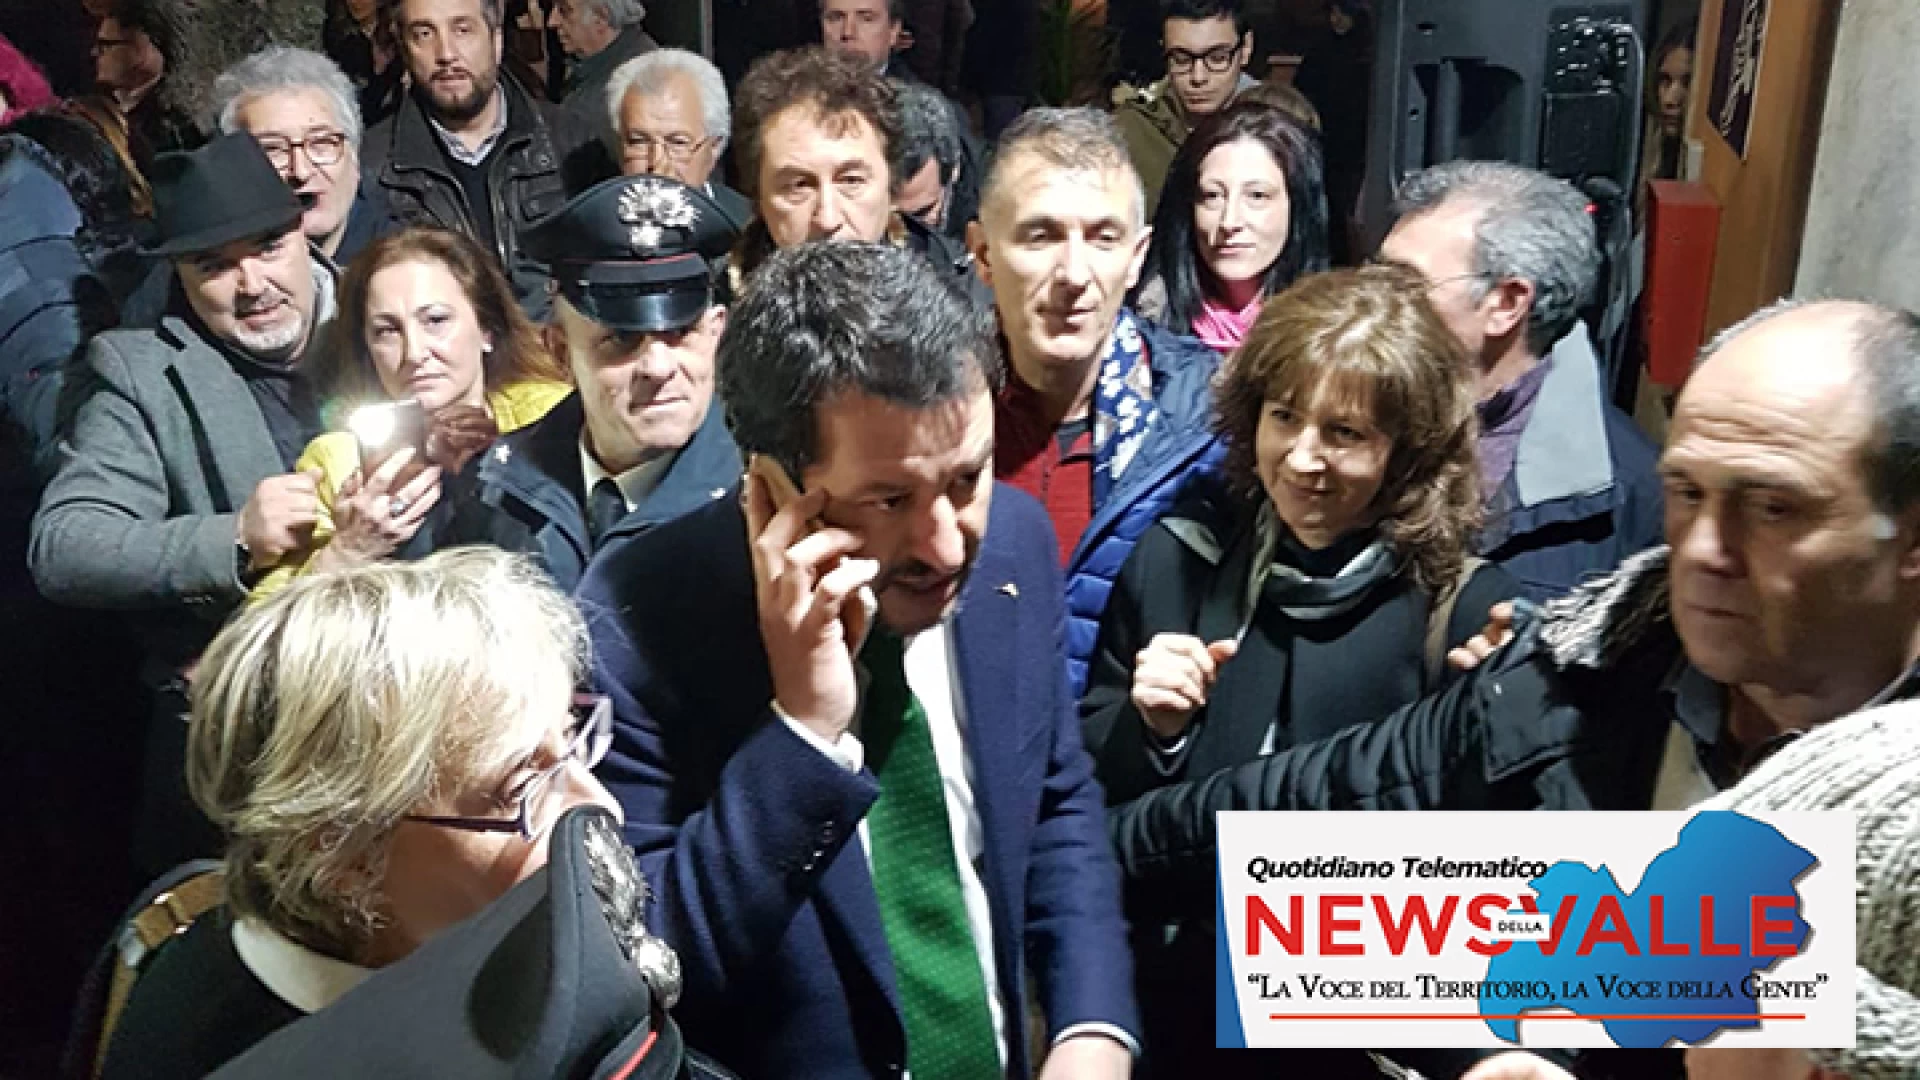 Accoglienza migranti: Manolo Sacco chiede aiuto a Salvini. Inviata una lettera al neo Ministro dell'Interno.